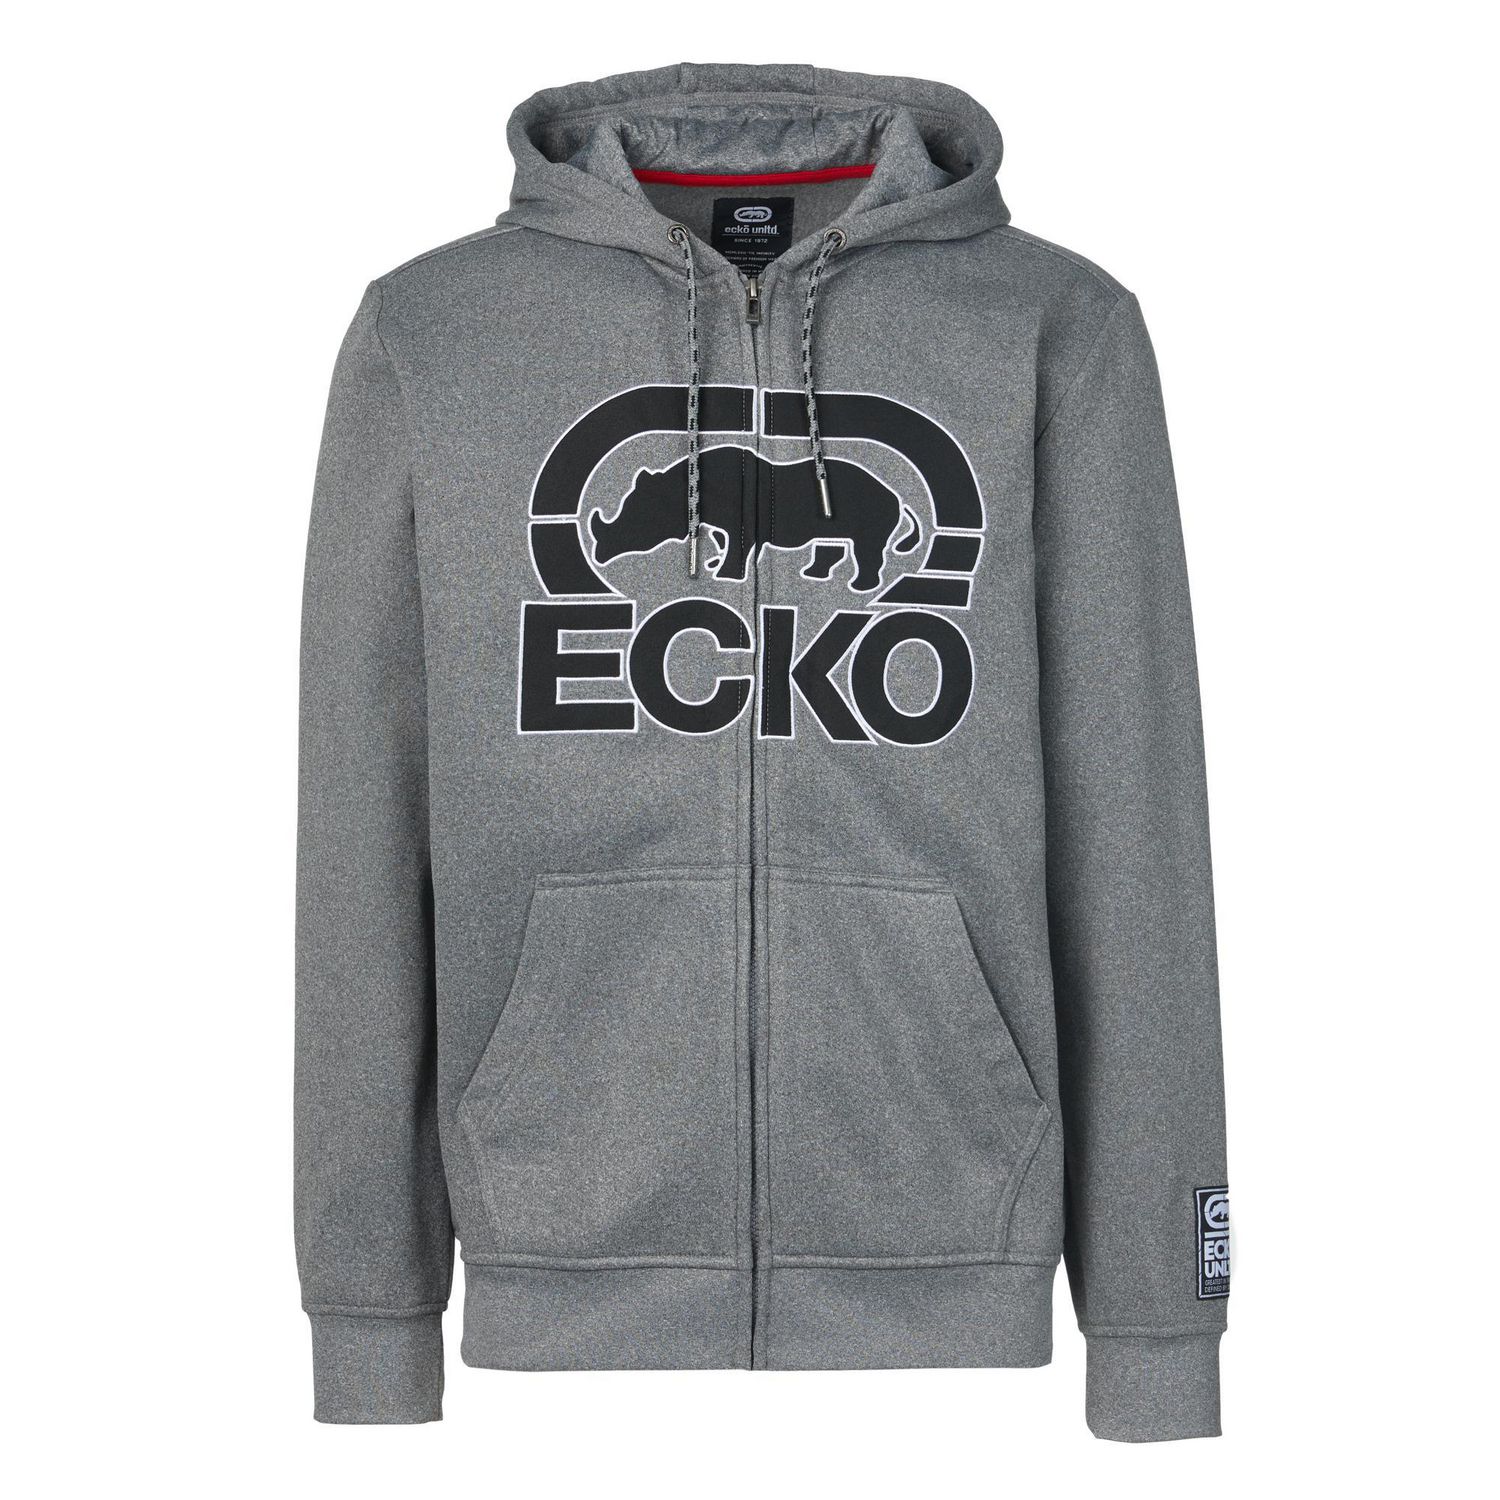 Ecko Unltd. Men’s Sweatshirt Rhino Love Fz Zip Sweater Fleece Hoodie